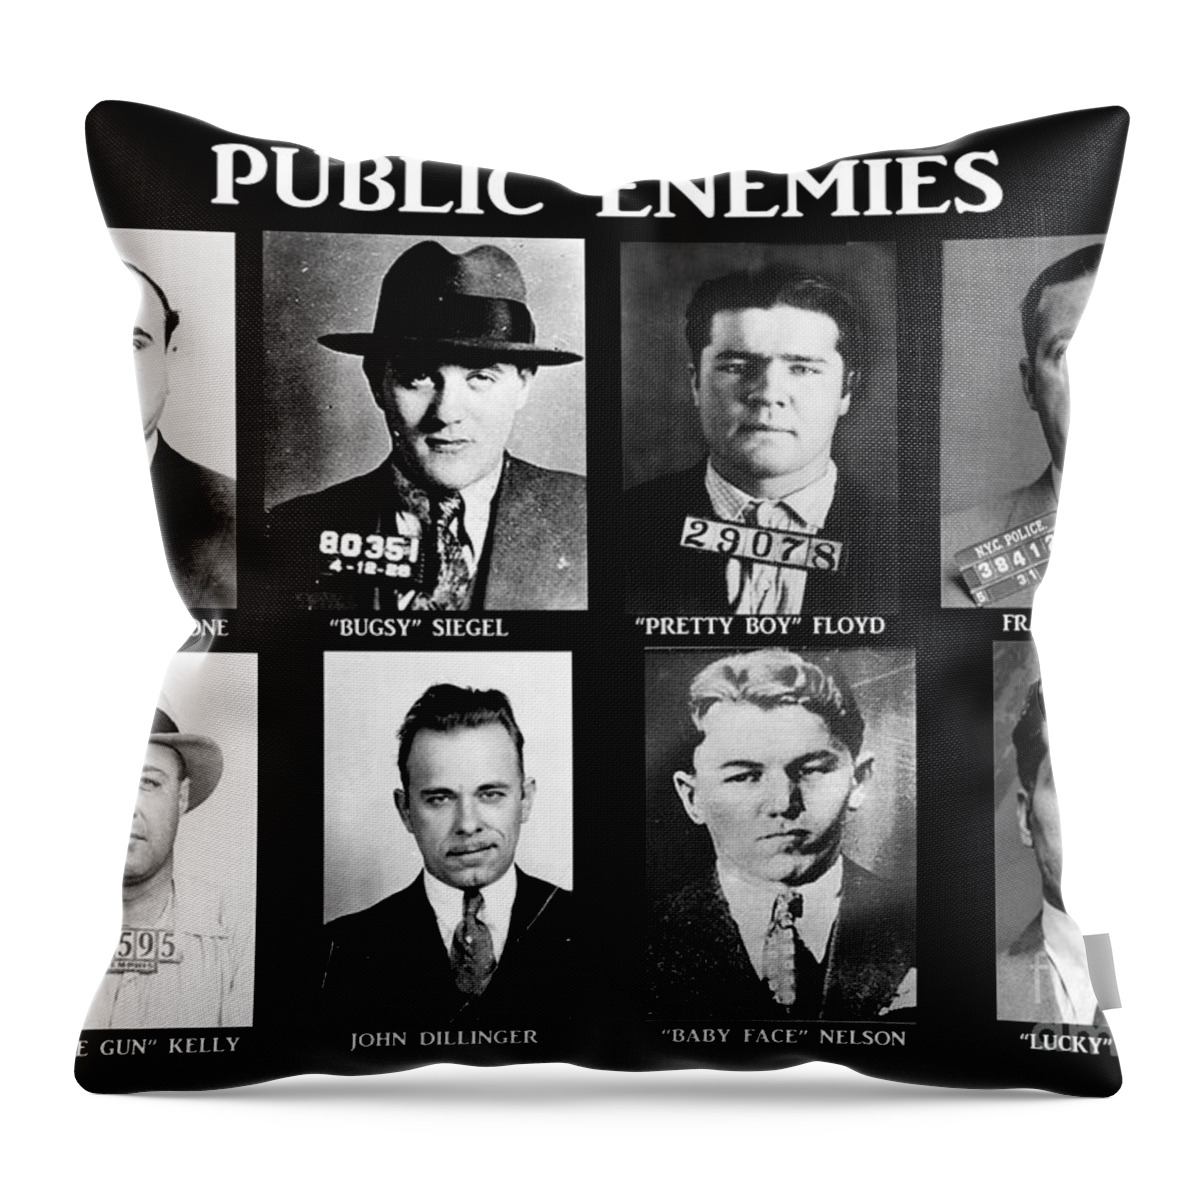 Original Gangsters - Public Enemies Throw Pillow featuring the photograph Original Gangsters - Public Enemies by Paul Ward